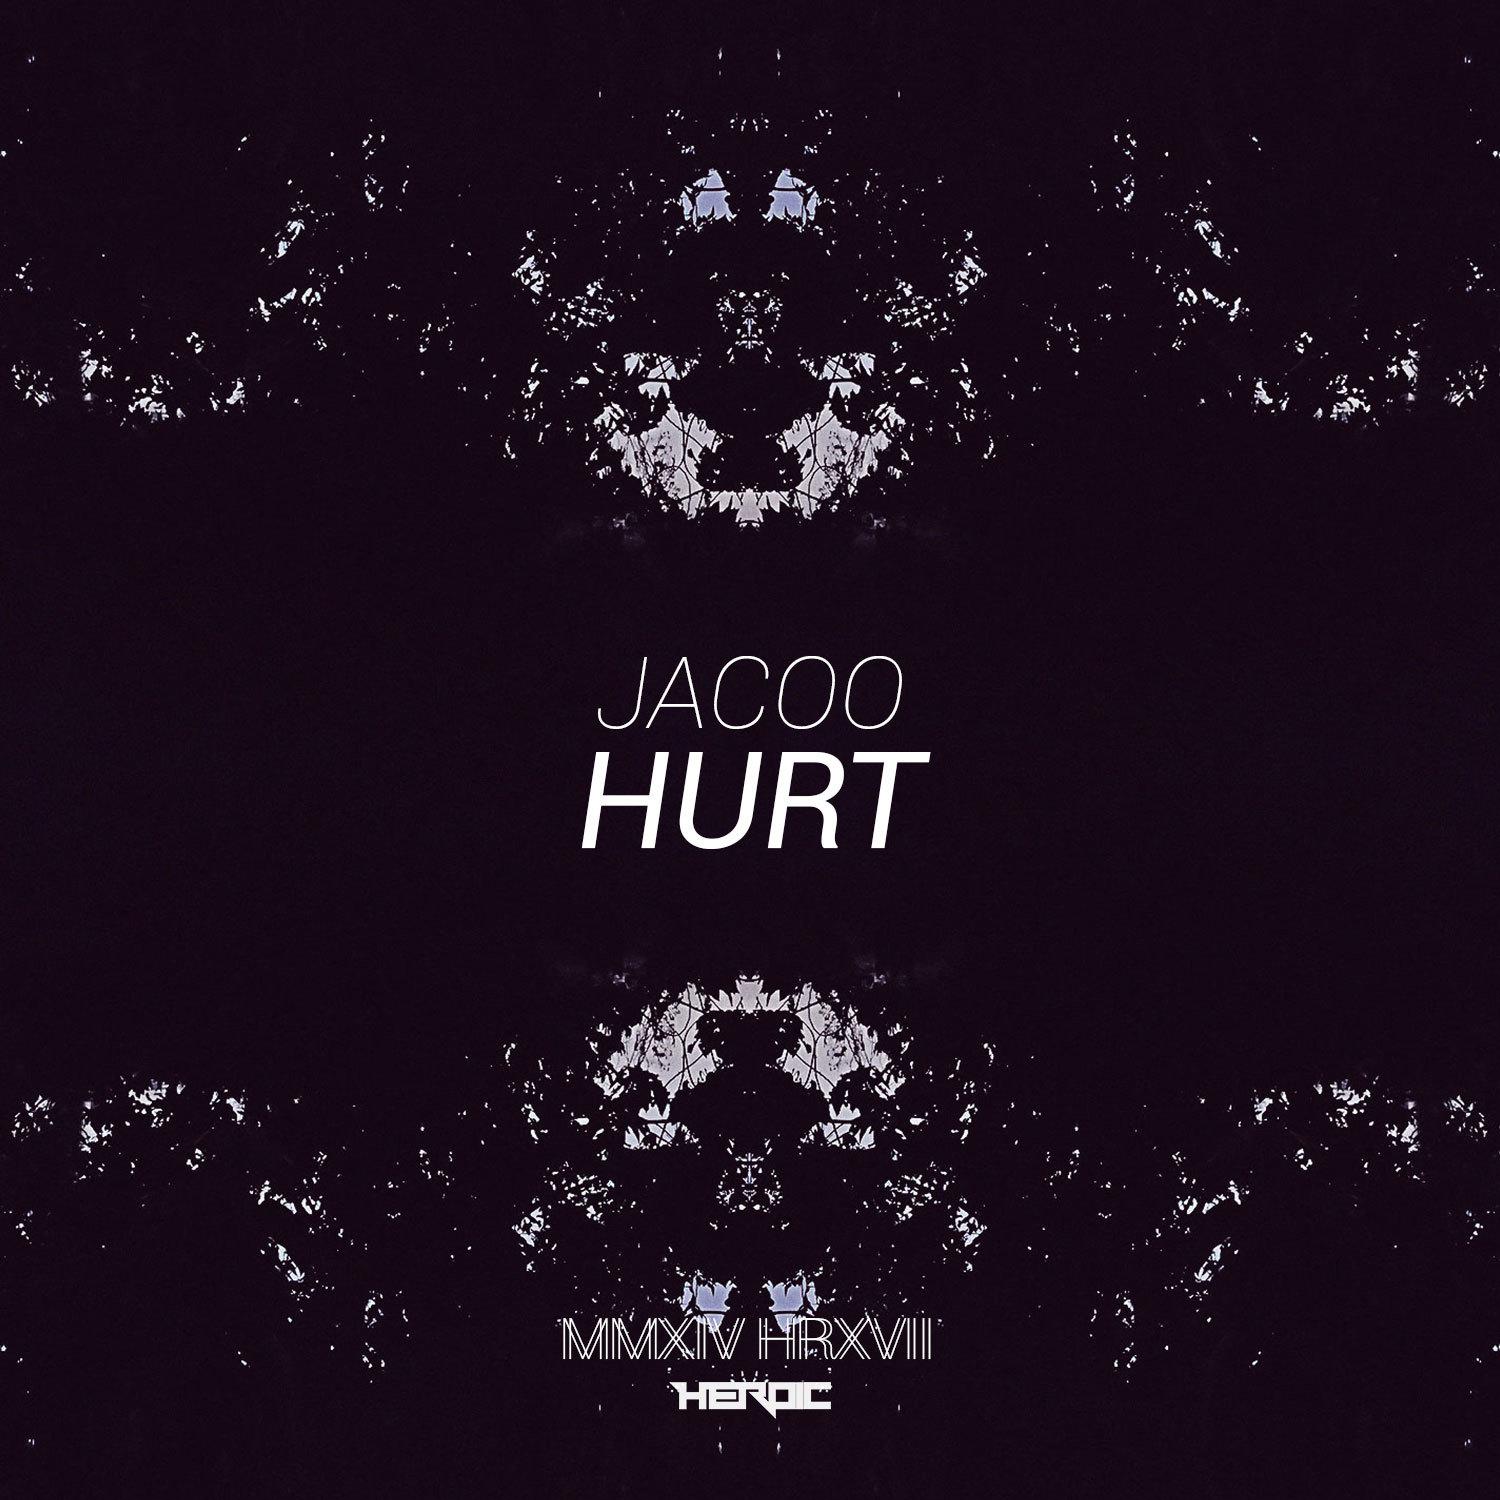 Hurt EP专辑